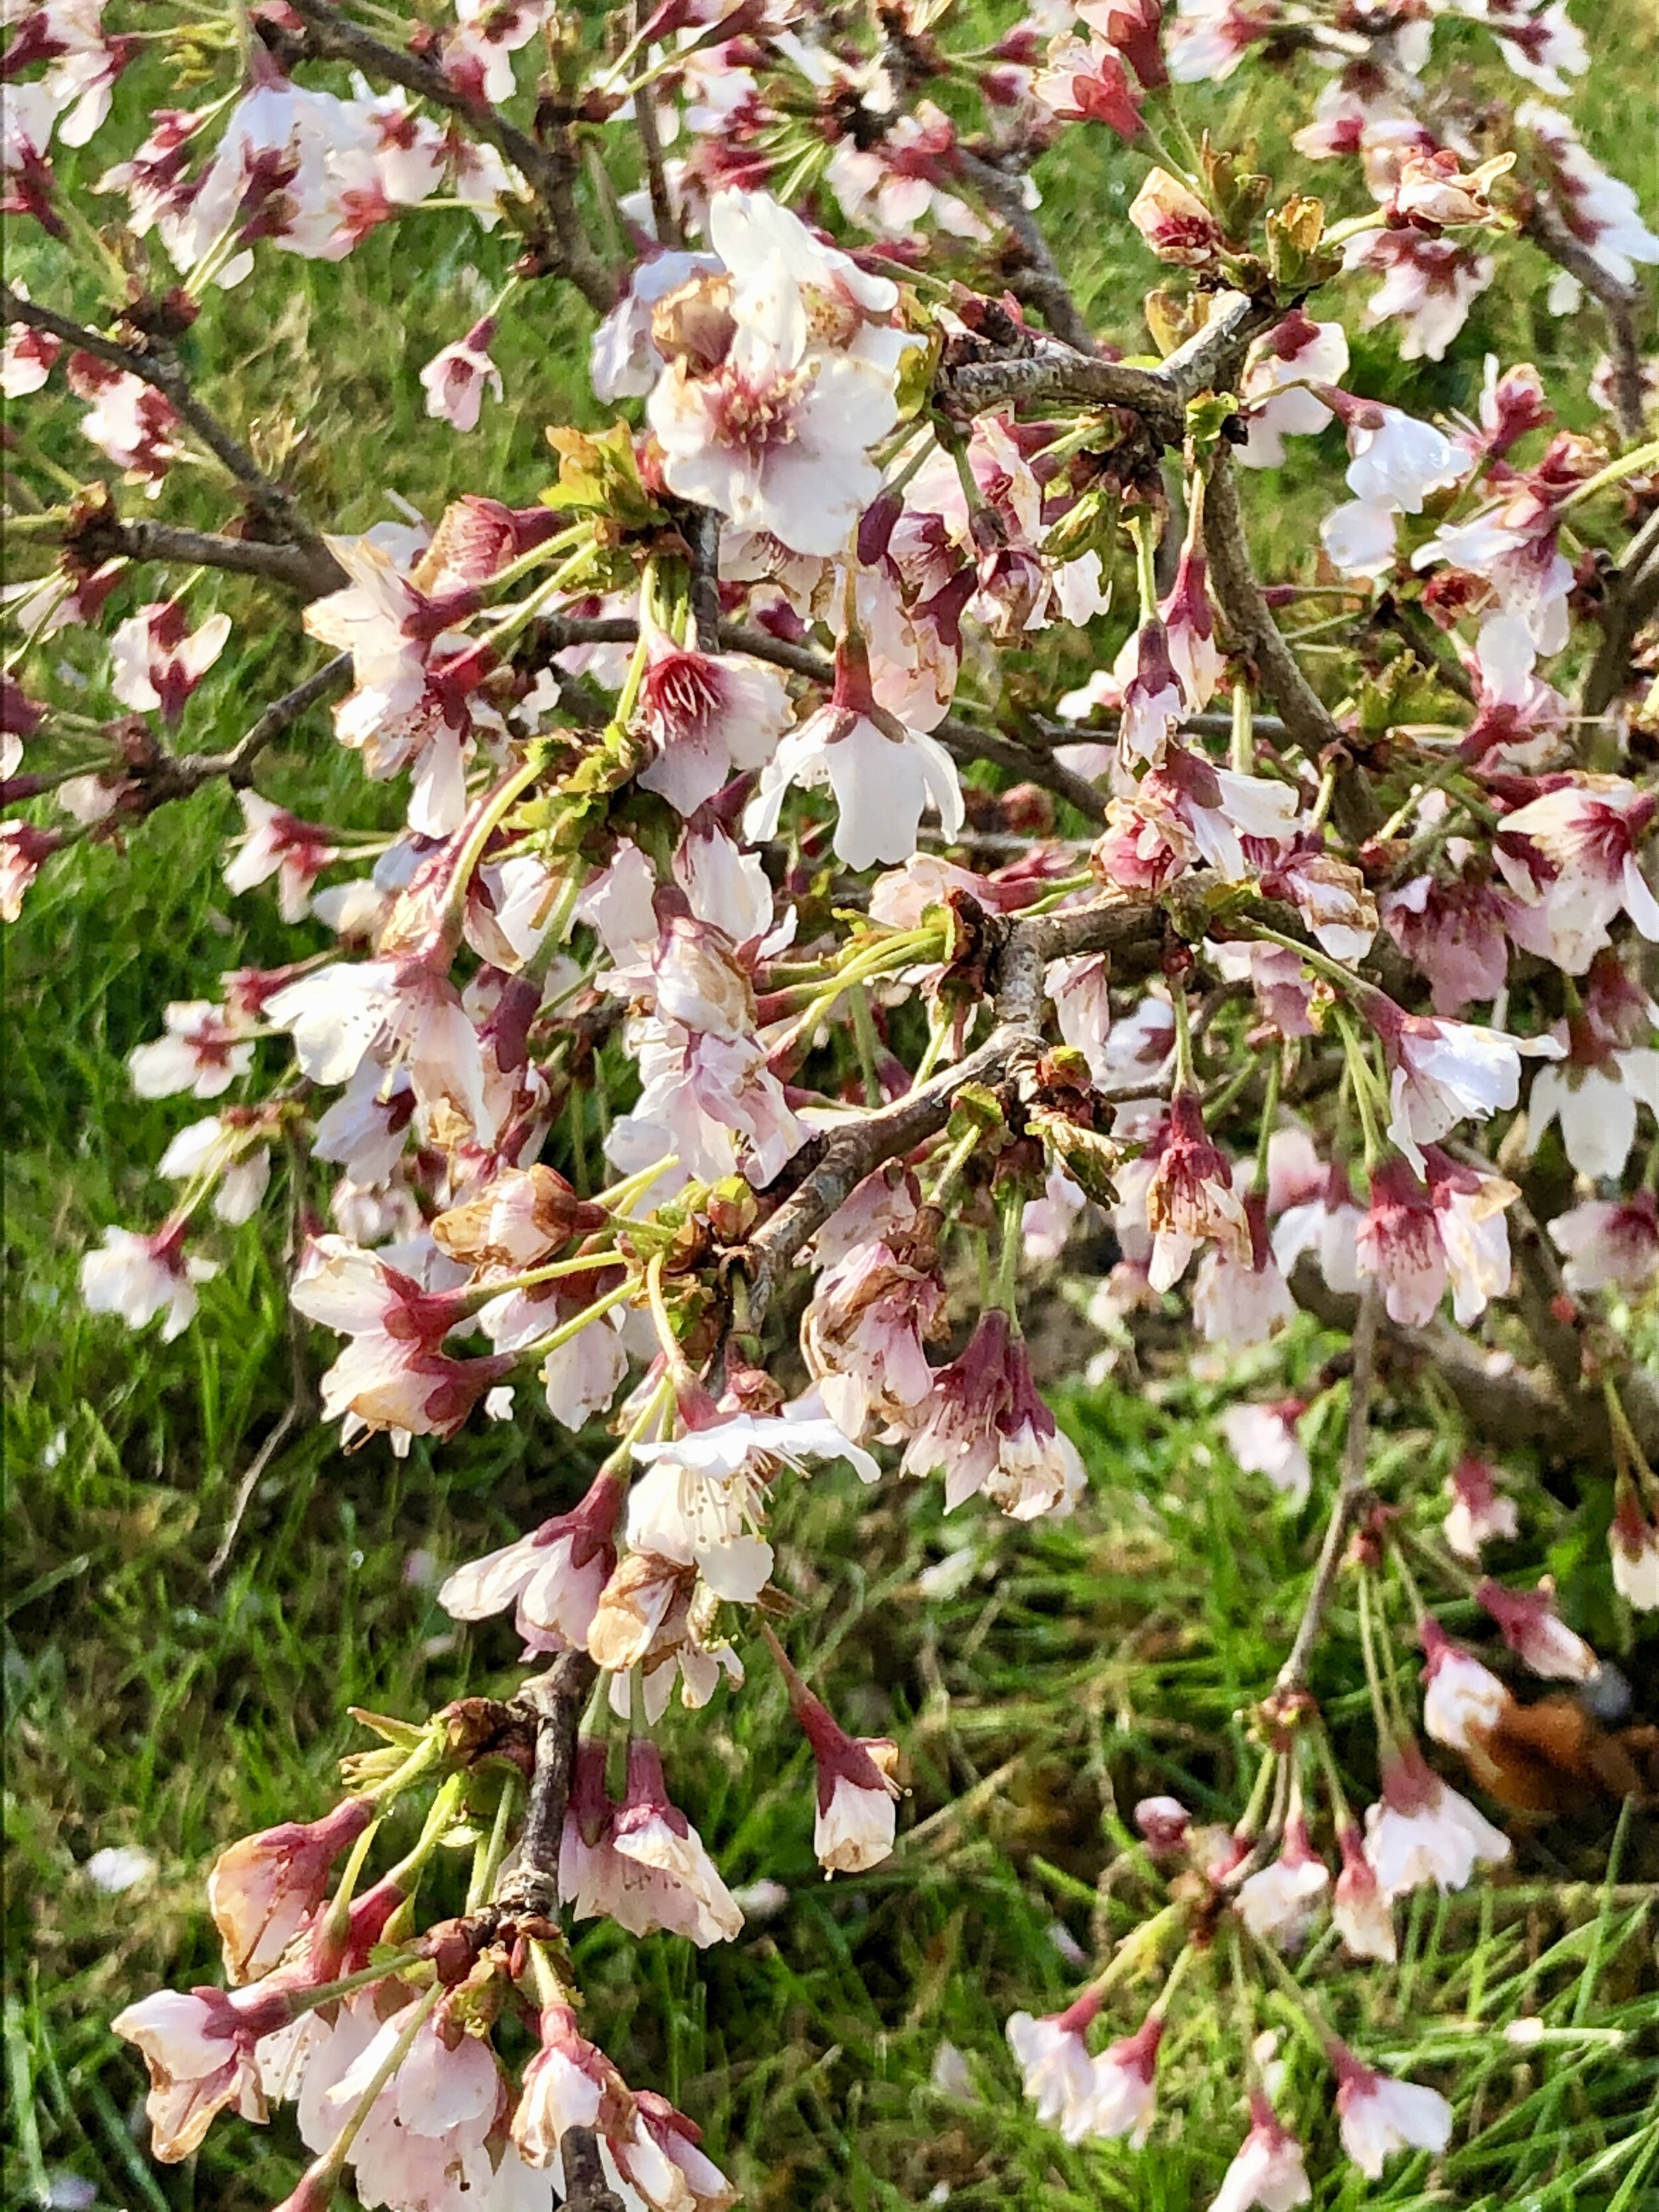 Prunus Incisa "Kojo-no-mai"